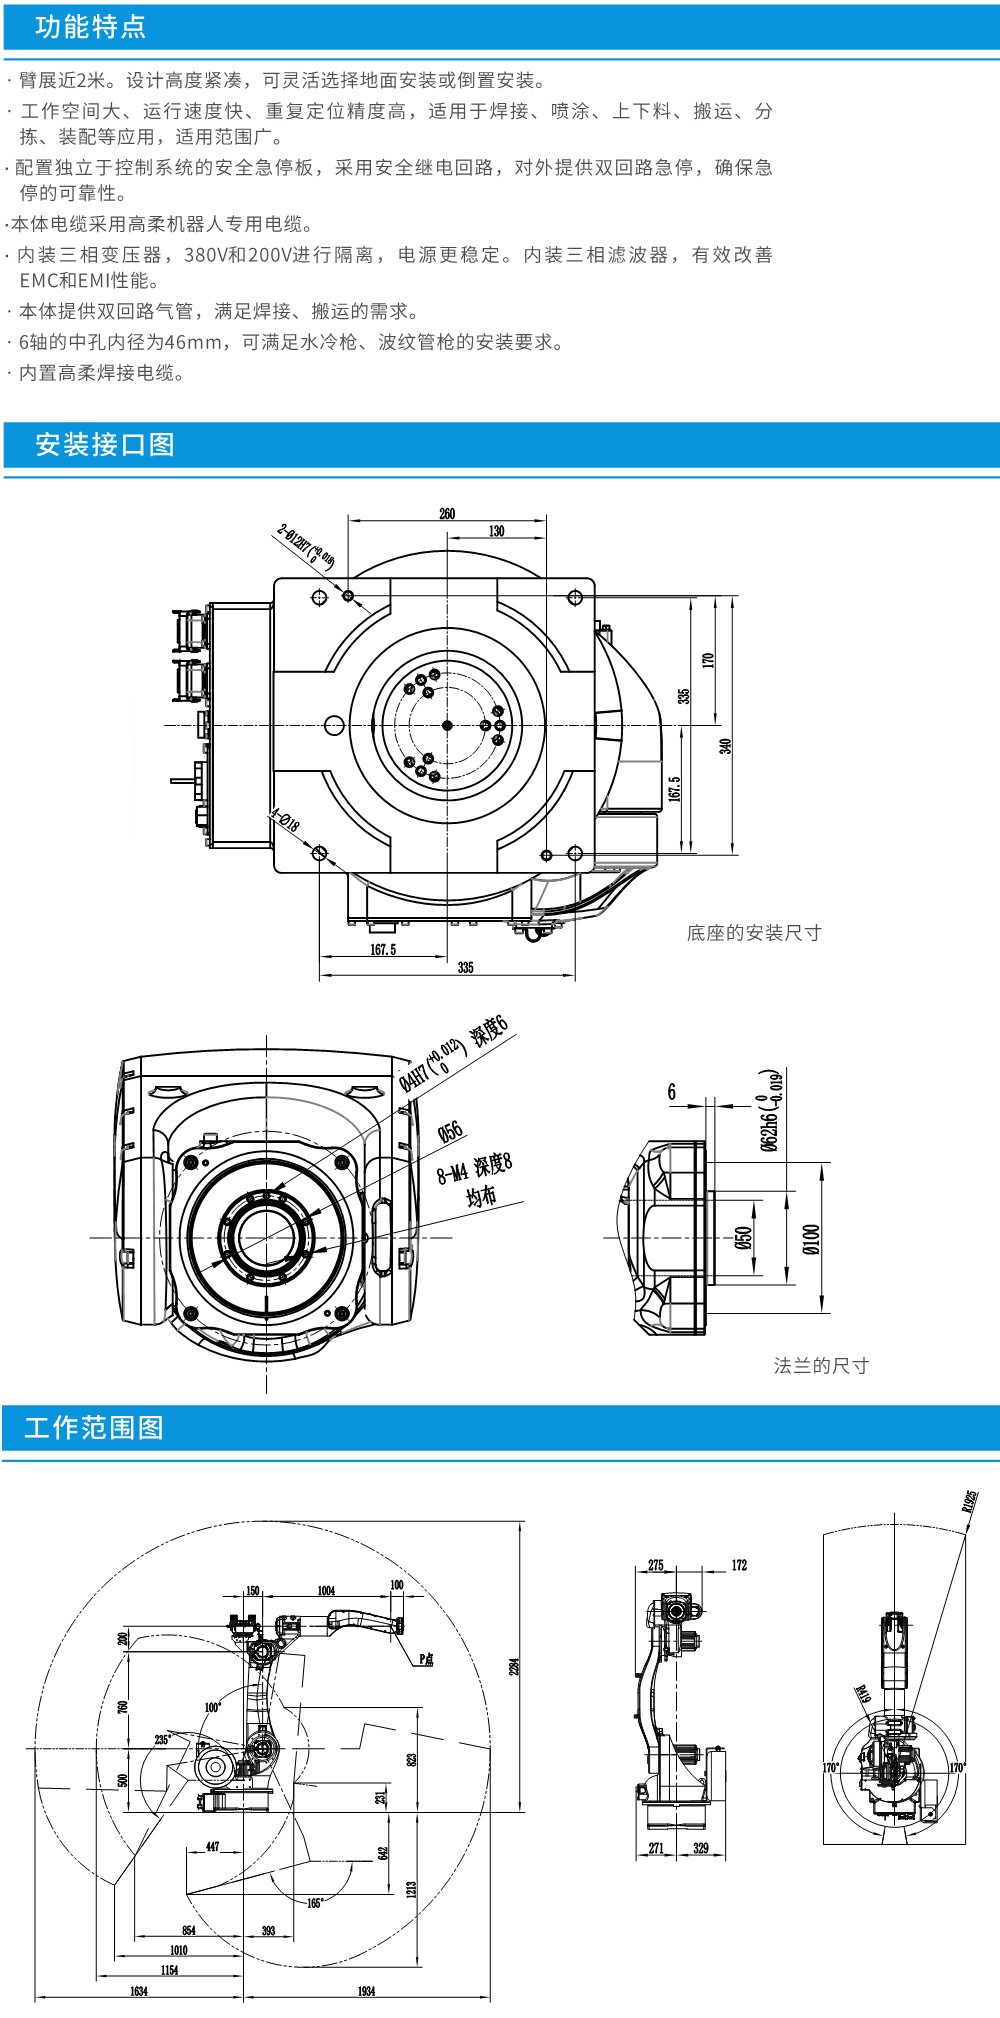 工业机器人焊接用途CRP-RH20-10-W-1.jpg